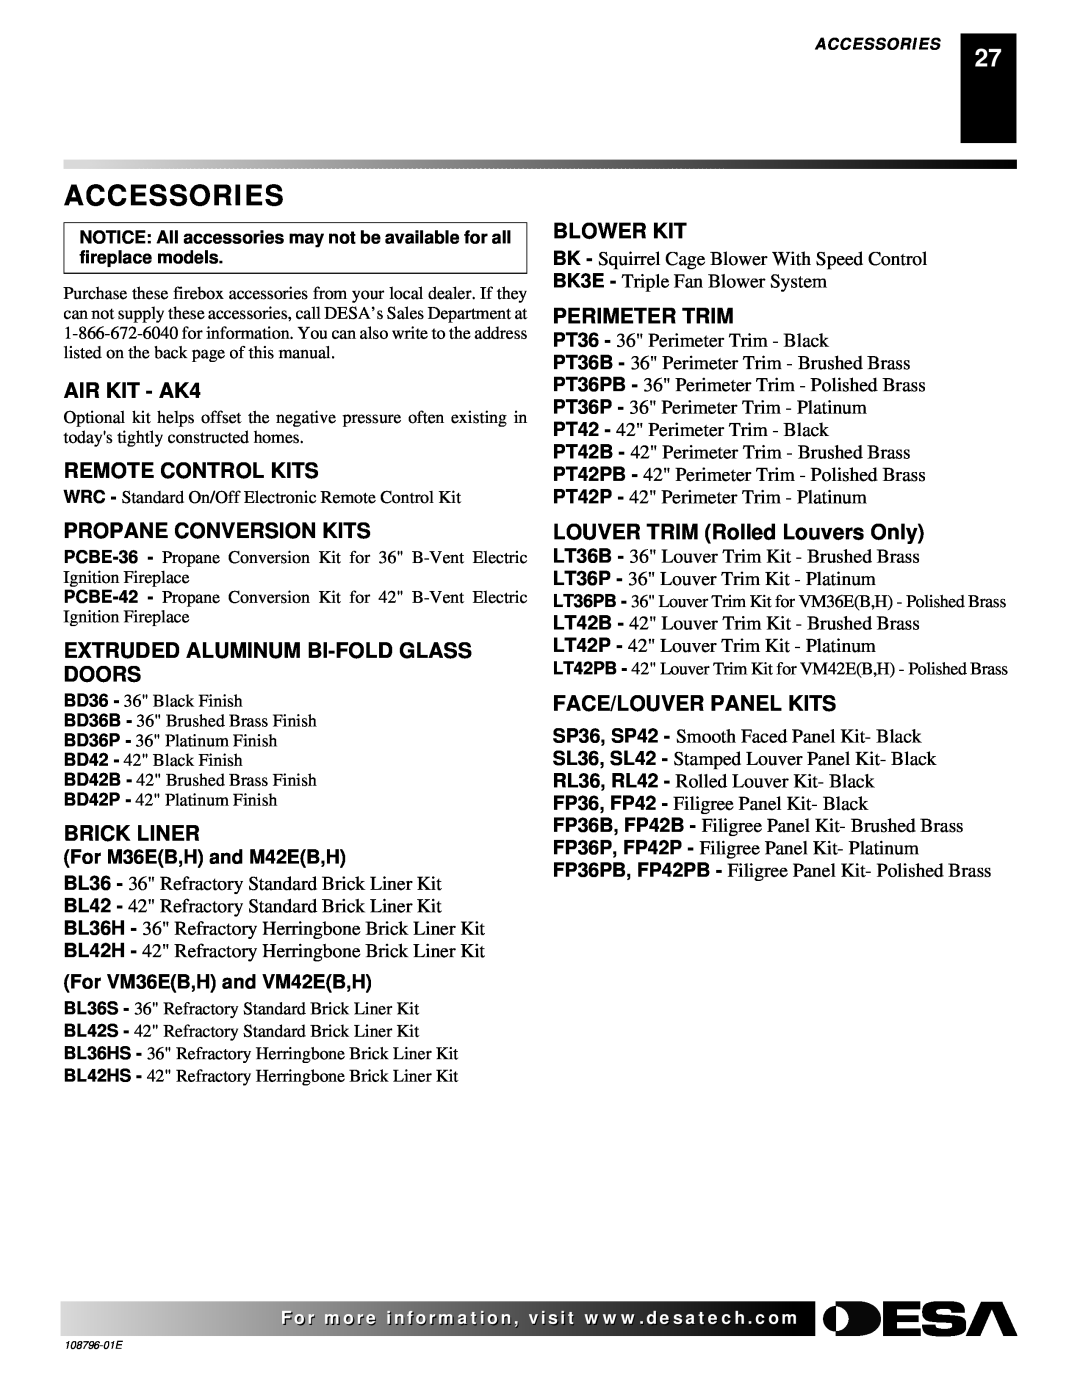 Desa VM36E(B Accessories, AIR KIT - AK4, Remote Control Kits, Blower Kit, Perimeter Trim, Propane Conversion Kits 